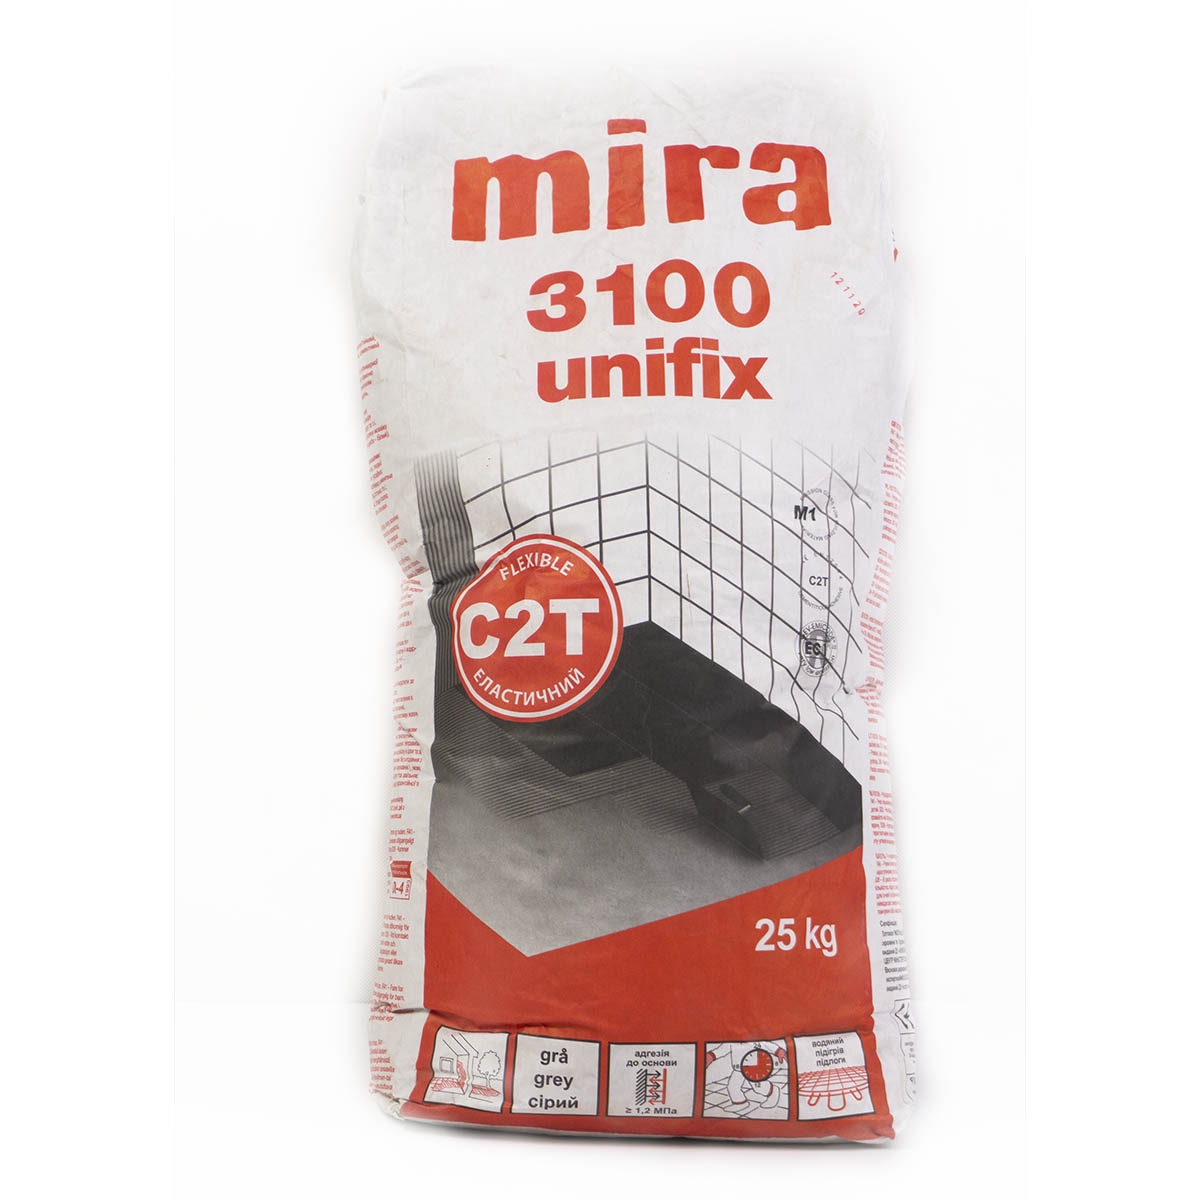 Клей для плитки mira 3100 unifix сiрий (25кг) 000007119 by Mira (Данія) color Сірий